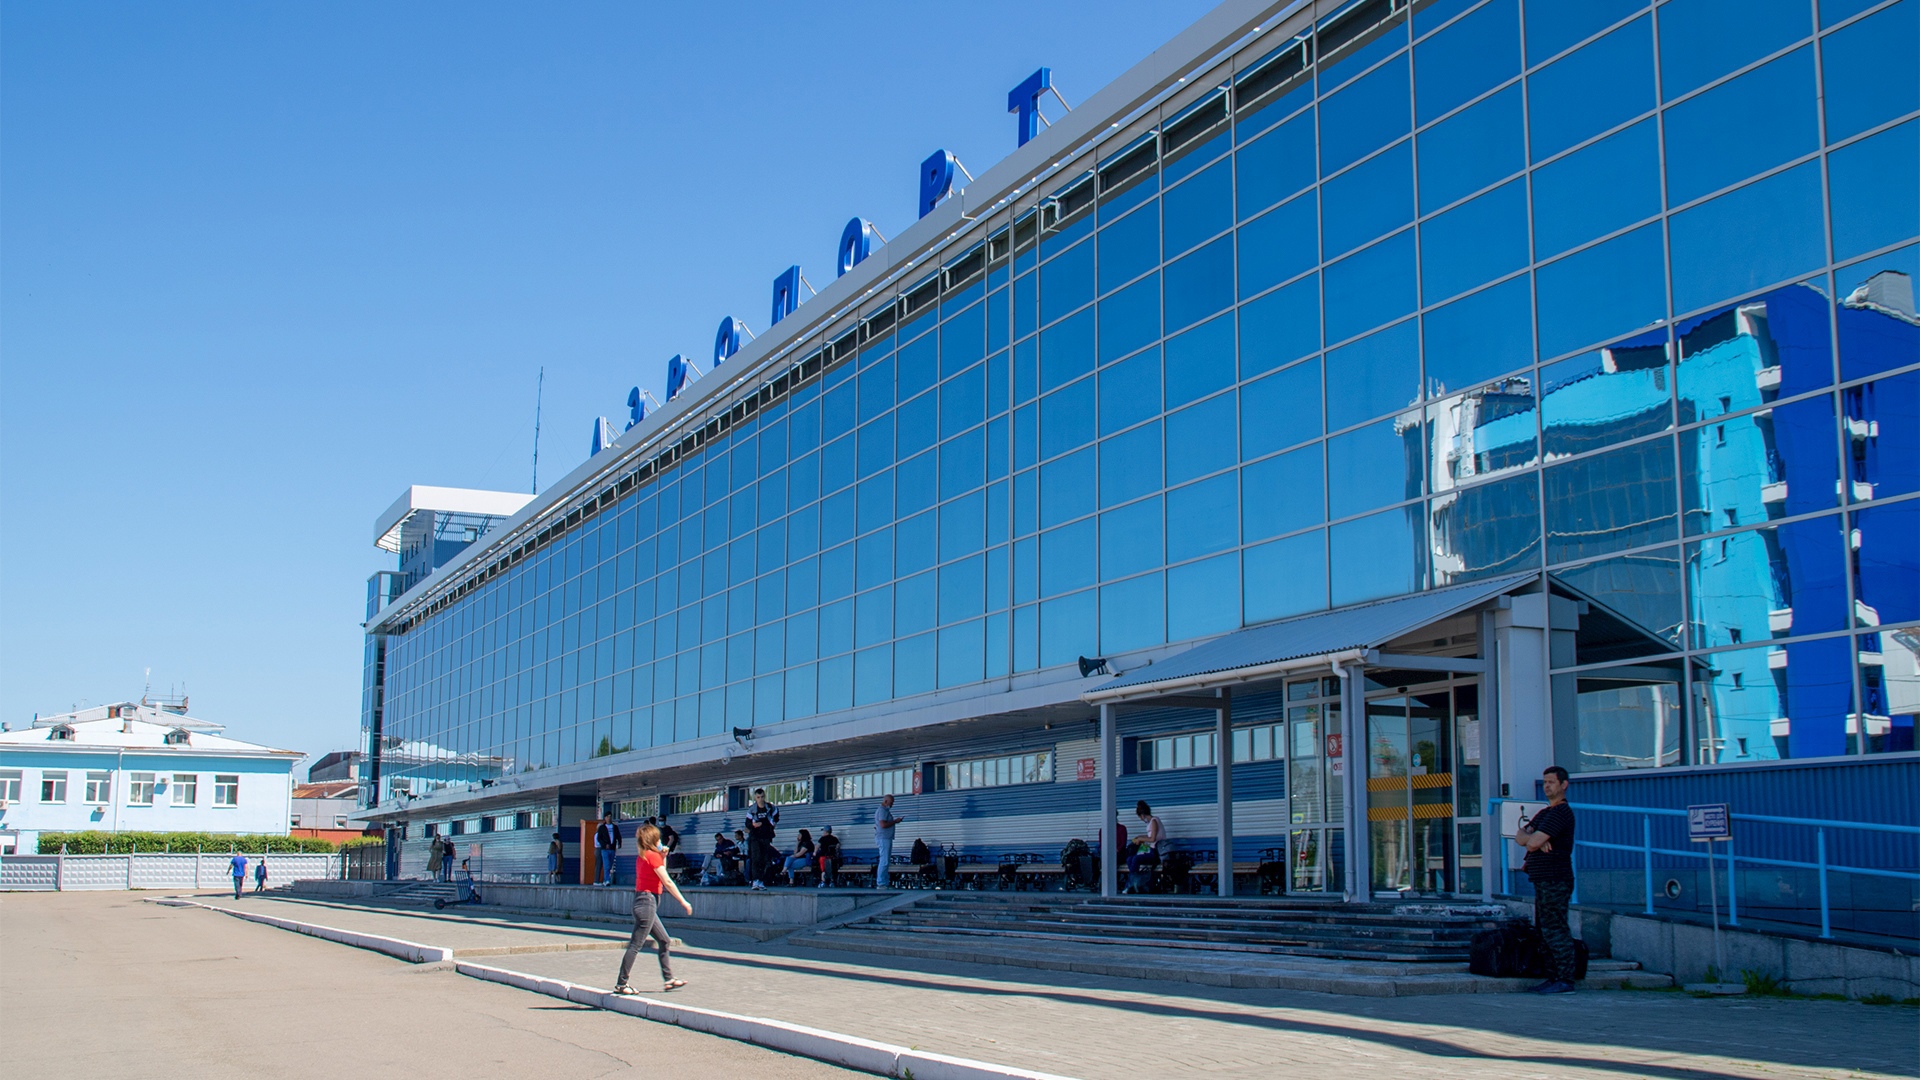 Иркутский аэропорт оптимизирует рабочие процессы с помощью экспертов Федерального центра компетенций в рамках реализации национального проекта «Производительность труда».